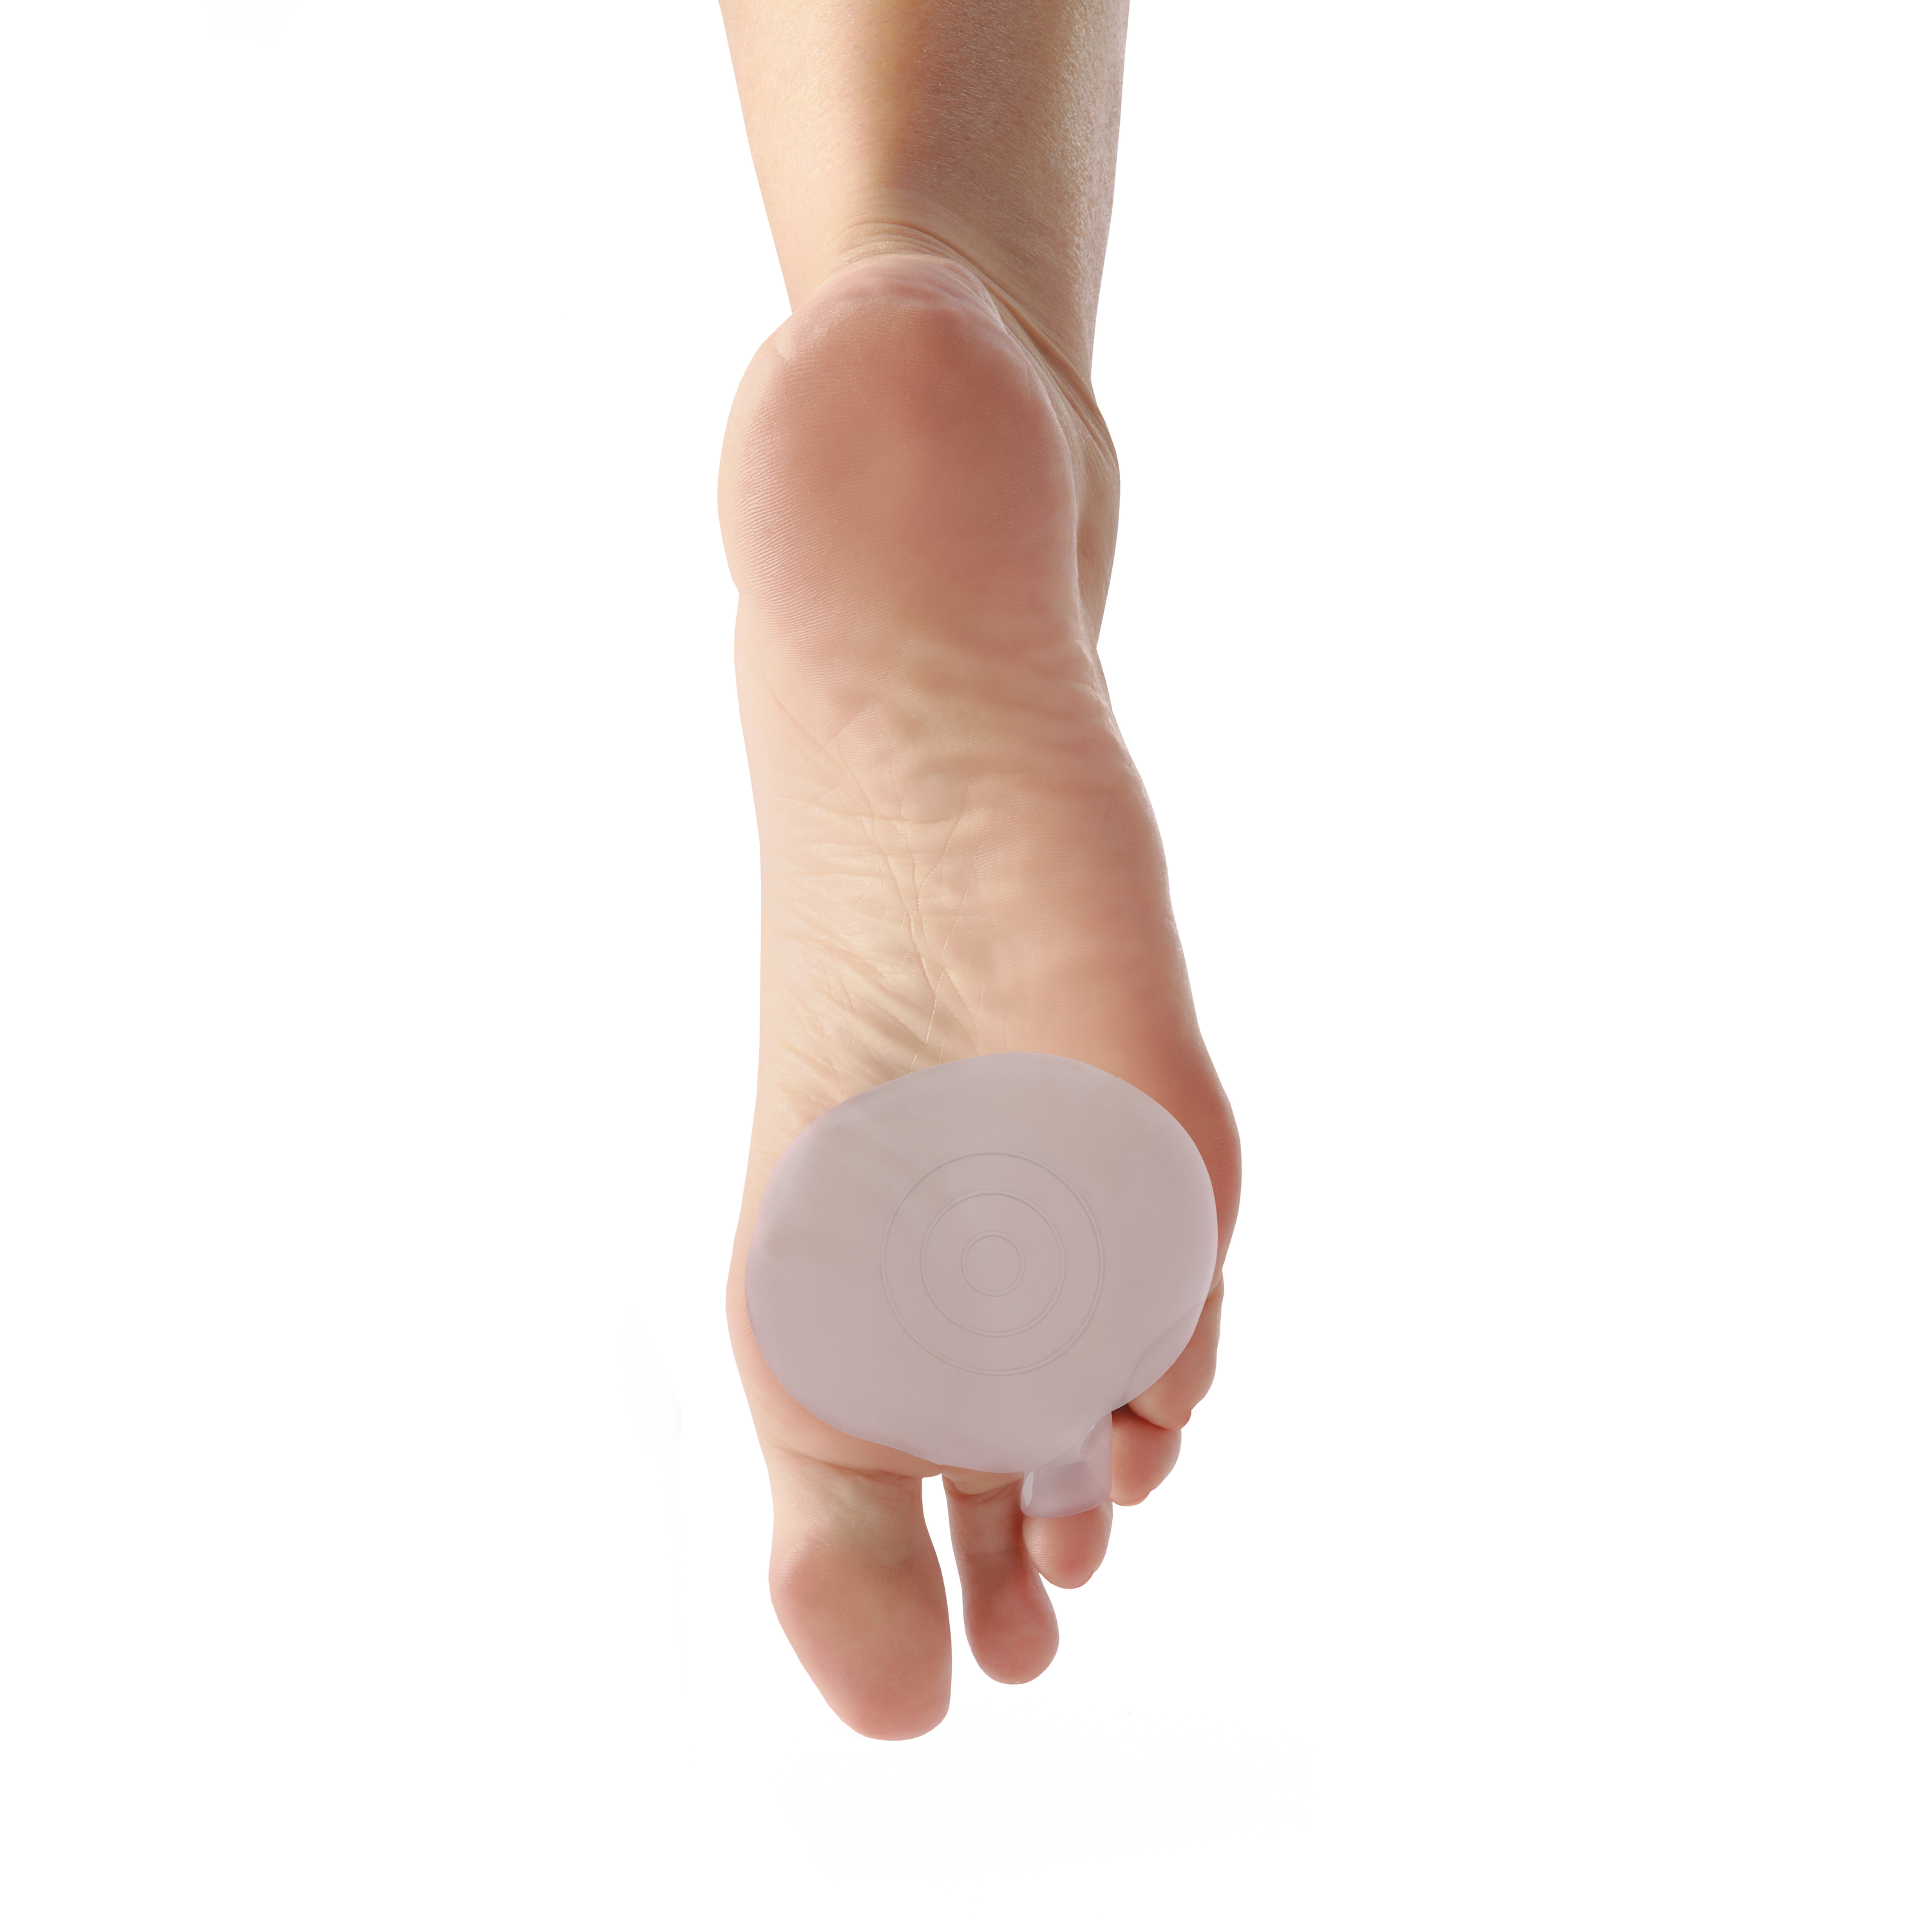 Produktbild AIRCAST® SofToes™ Vorfußkissen, ergonomisches Gelpolster, das Schutz, Komfort und Unterstützung bei Fußproblemen und Hallux Valgus bietet